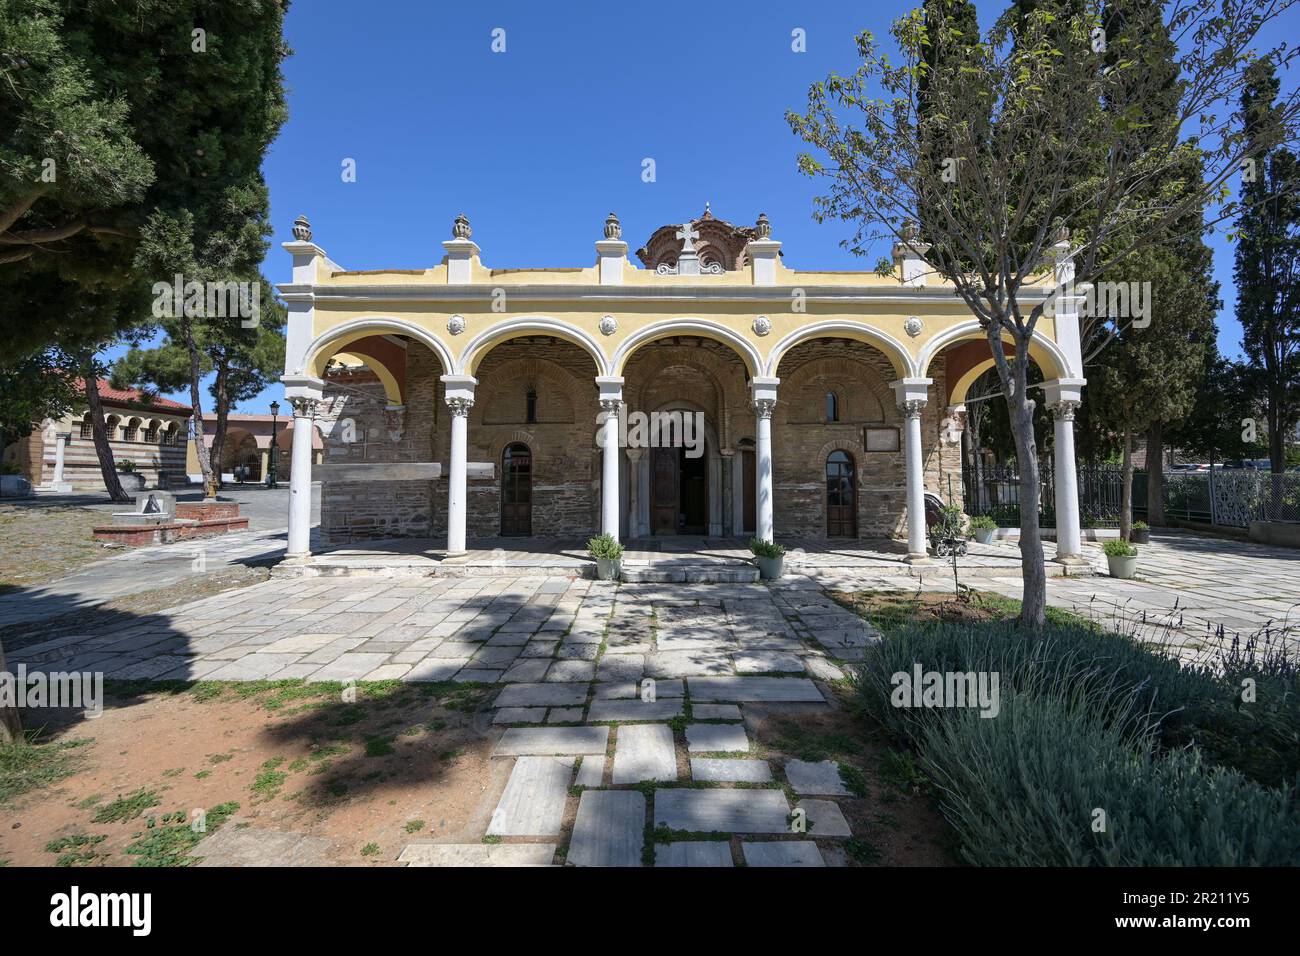 Vlatades Kloster, historischer byzantinischer Tempel in der Oberstadt Thessaloniki, Griechenland, UNESCO-Weltkulturerbe seit 1988, Wahrzeichen und Tourismus d Stockfoto